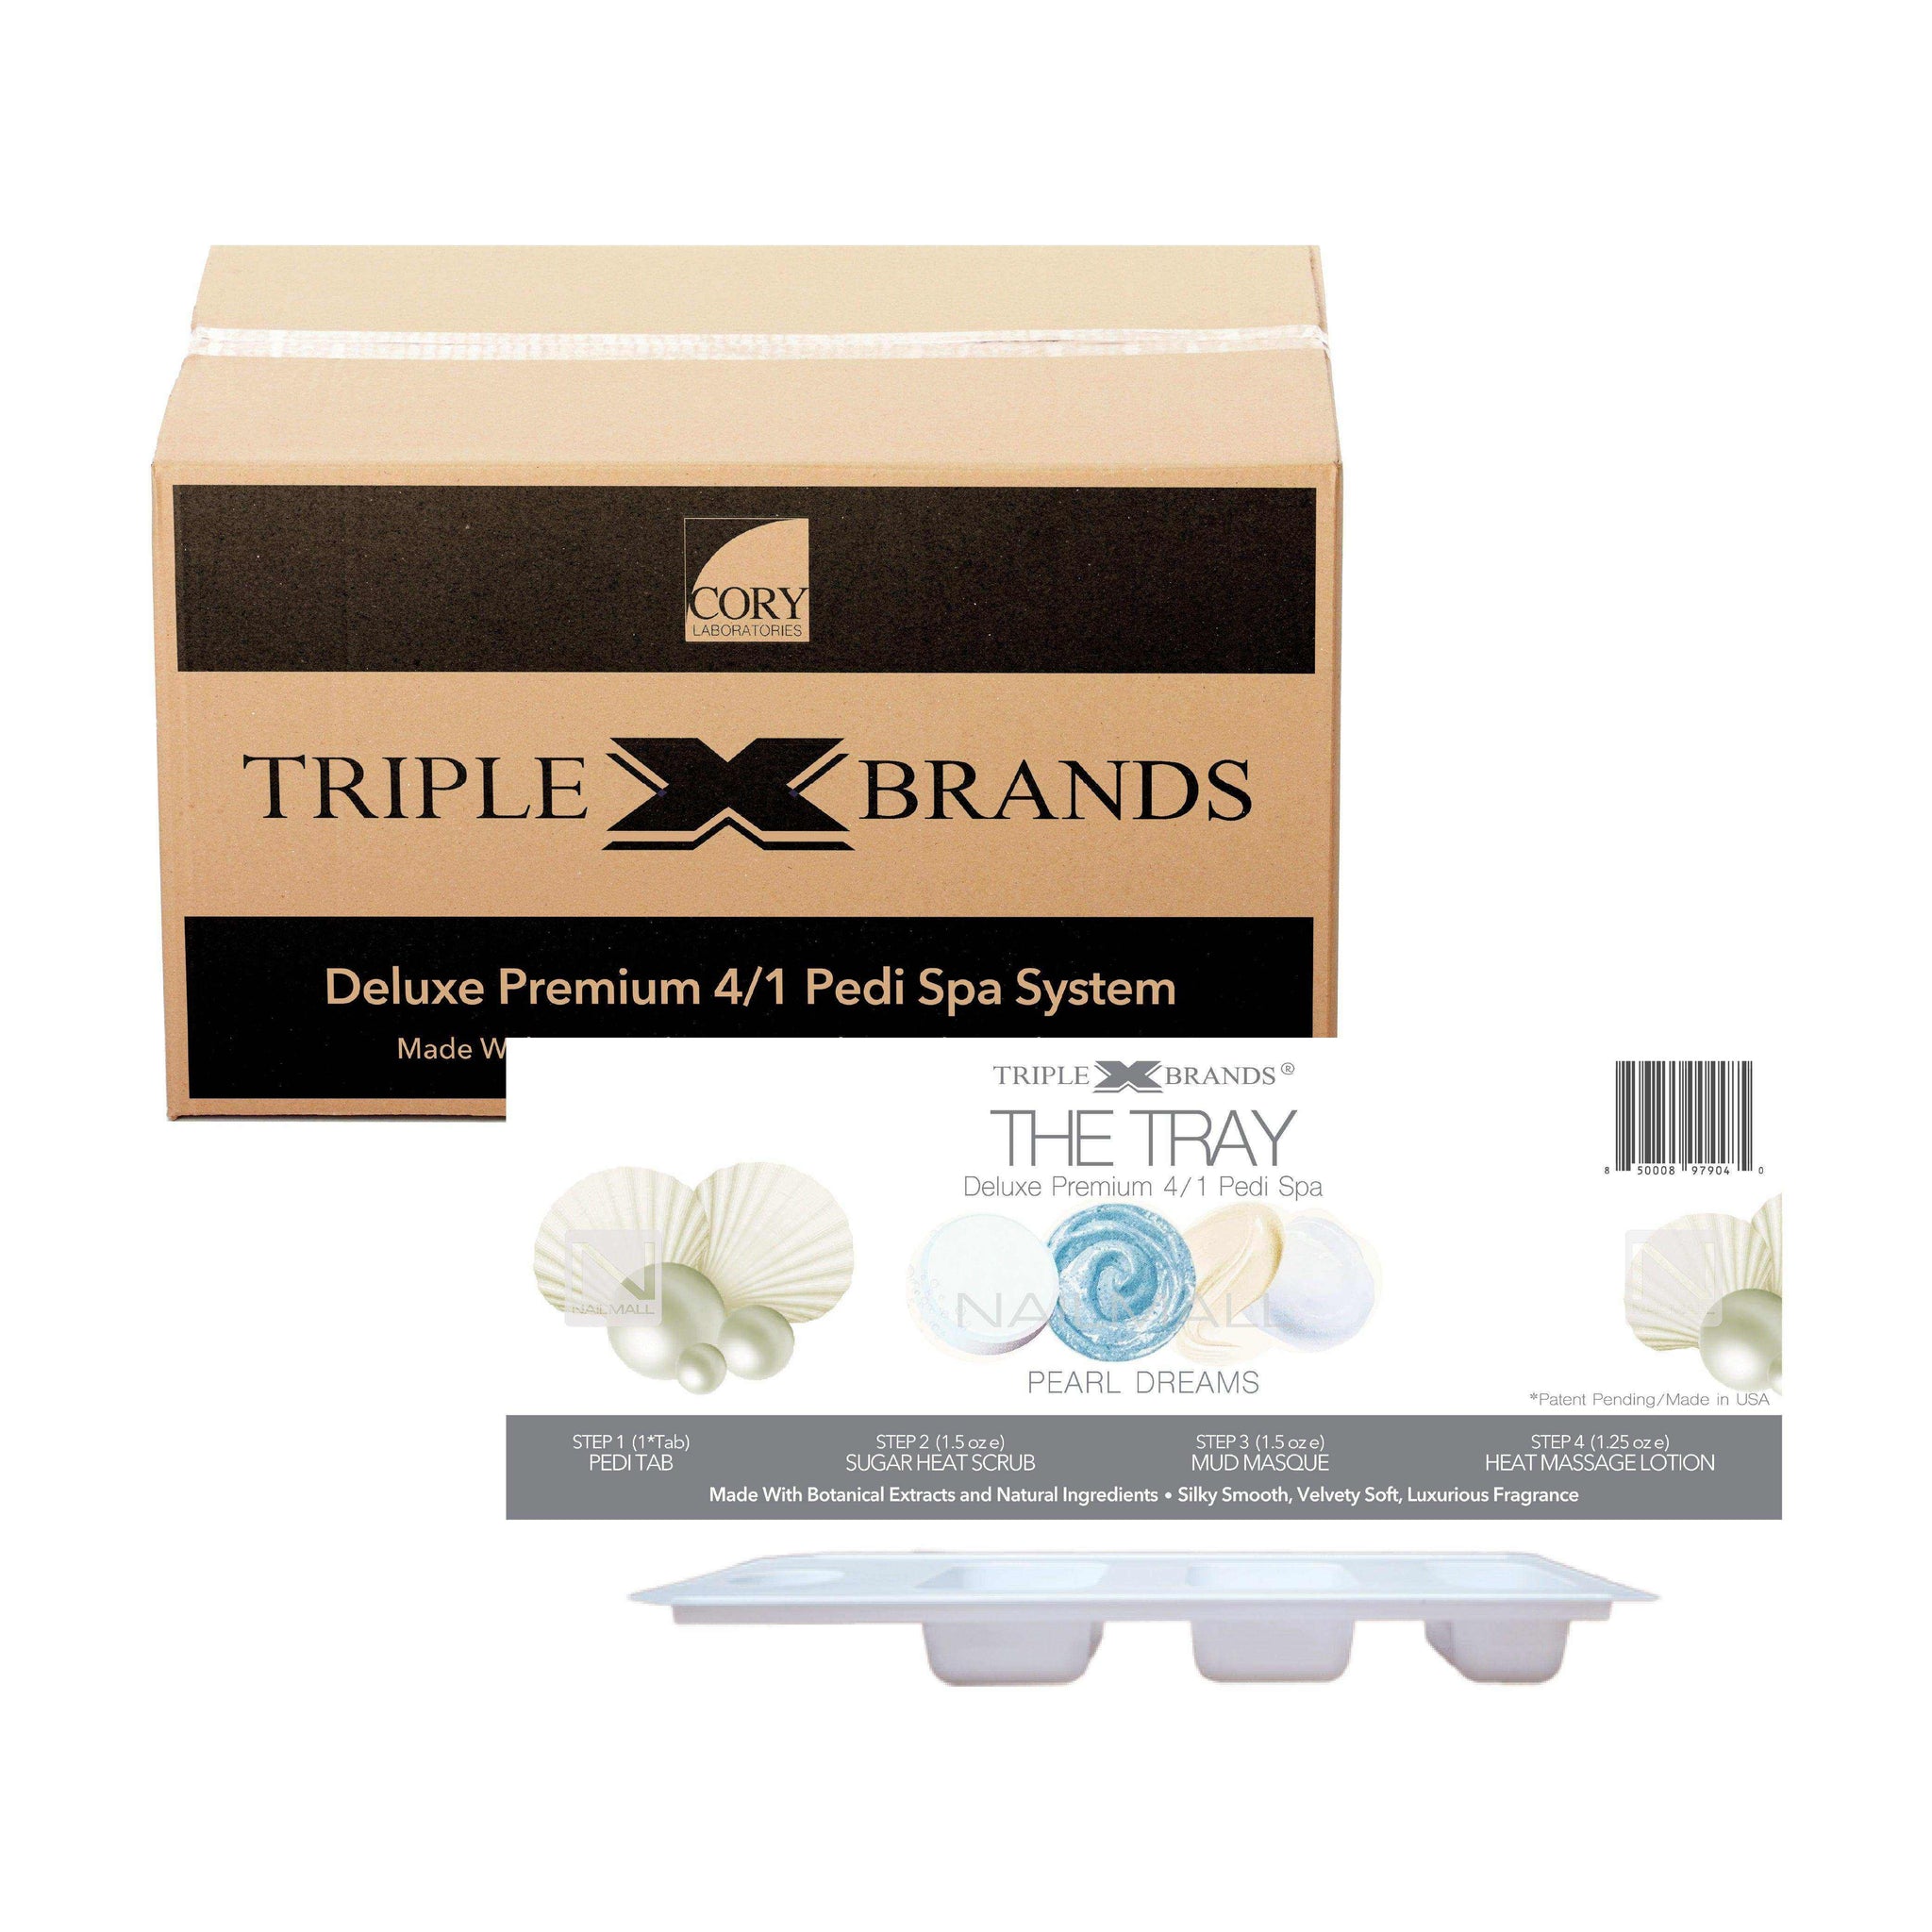 Triple X Brands 4/1 Pedi Spa Tray - Pearl Dreams 54pc